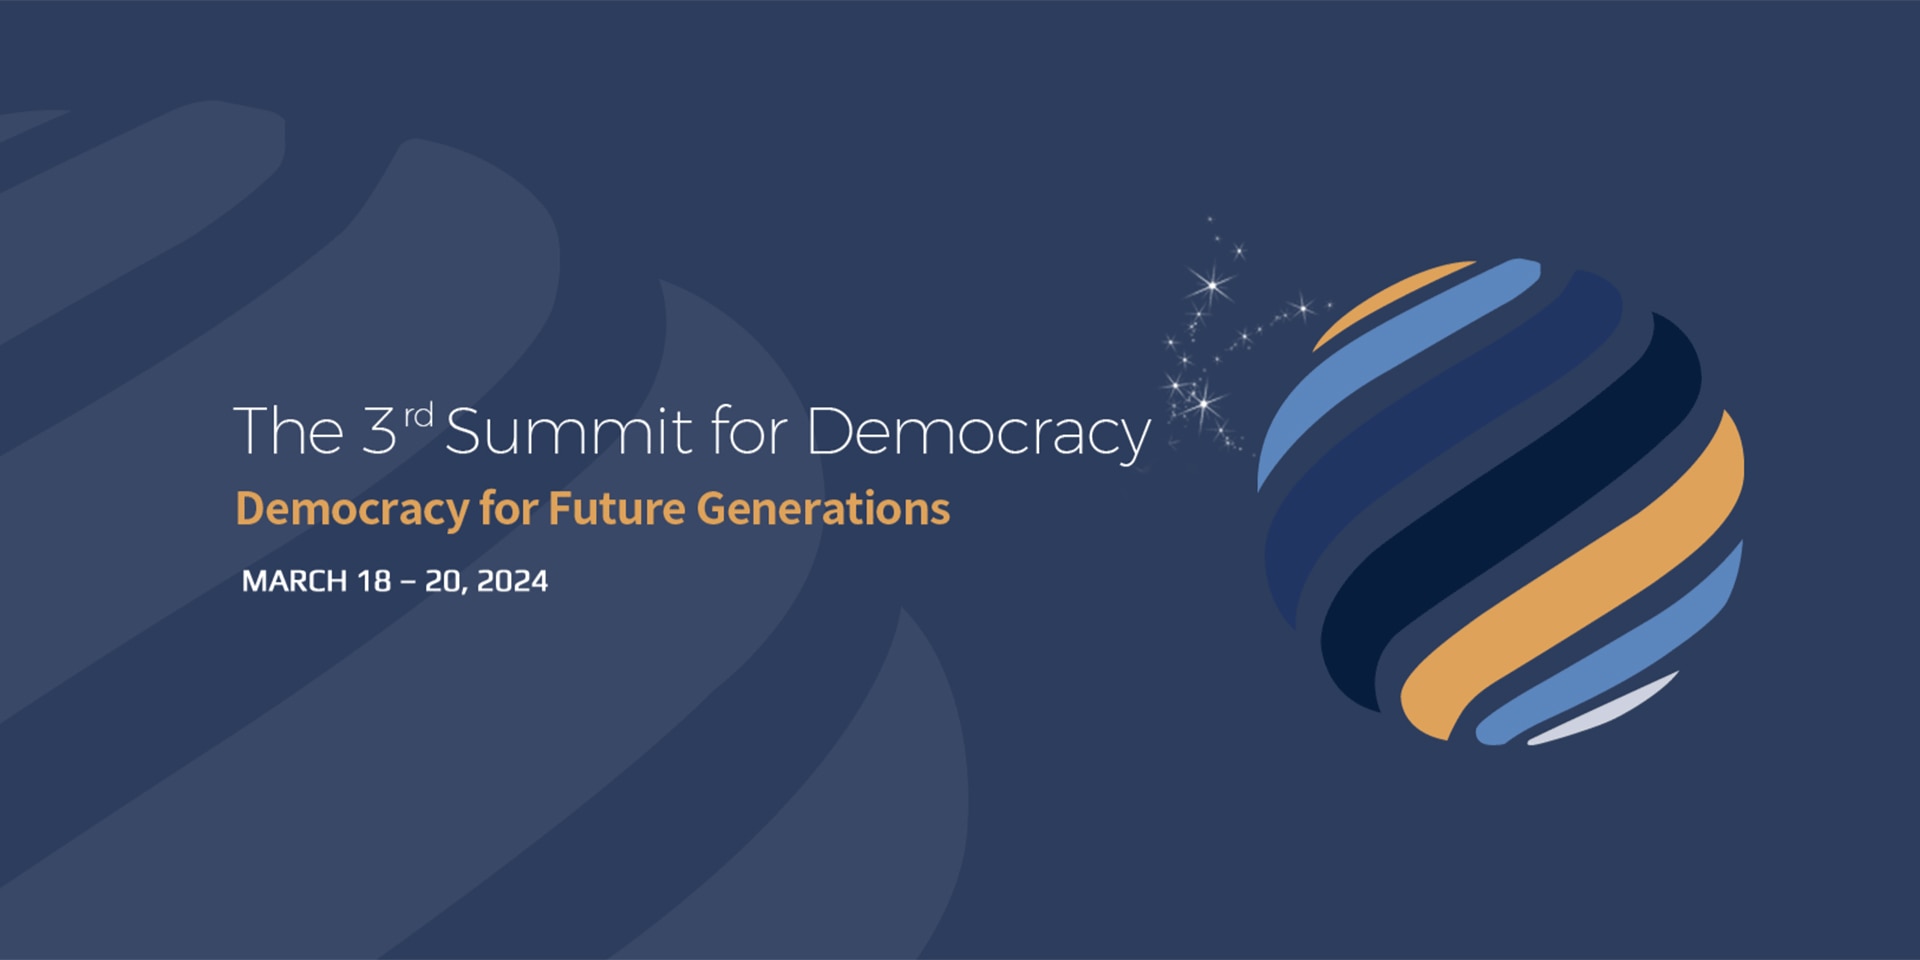 Aus Farbstrichen in gelb, blau und schwarz wird eine Weltkugel skizziert. Daneben steht «Demokratie für künftige Generationen», das Thema des Gipfels für Demokratie in Seoul.